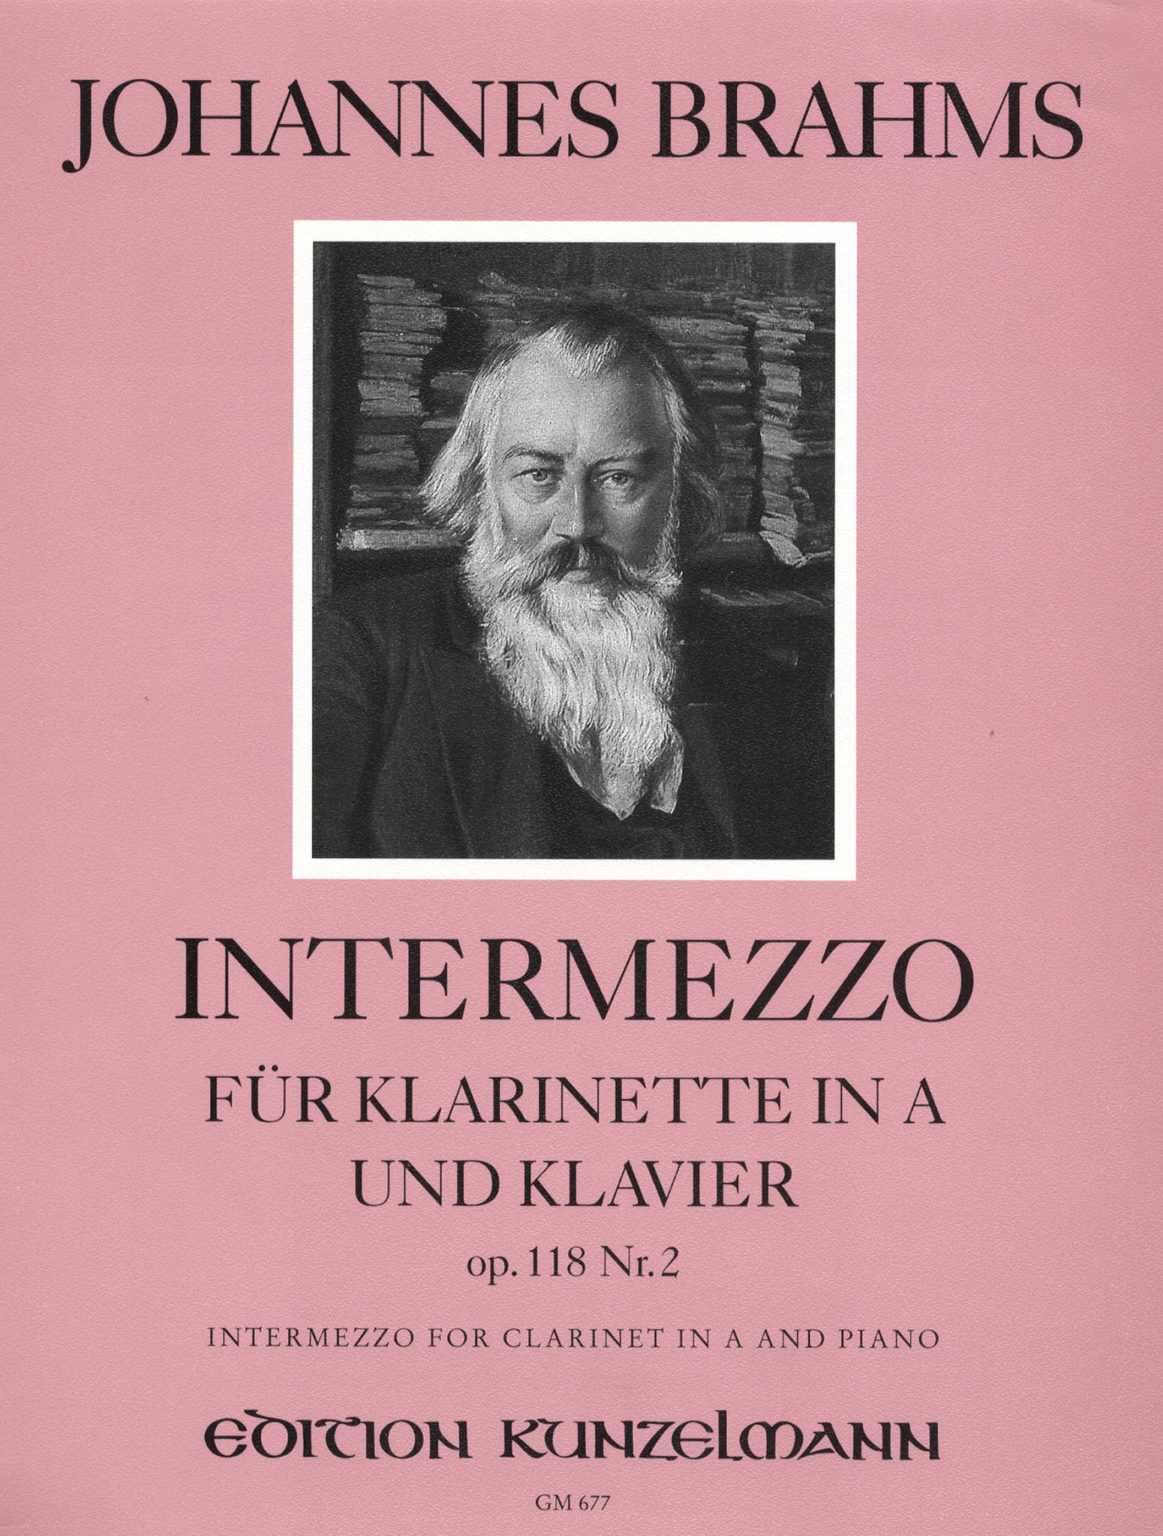 Intermezzo op.118 No.2 para clarinete y piano. Johannes Brahms